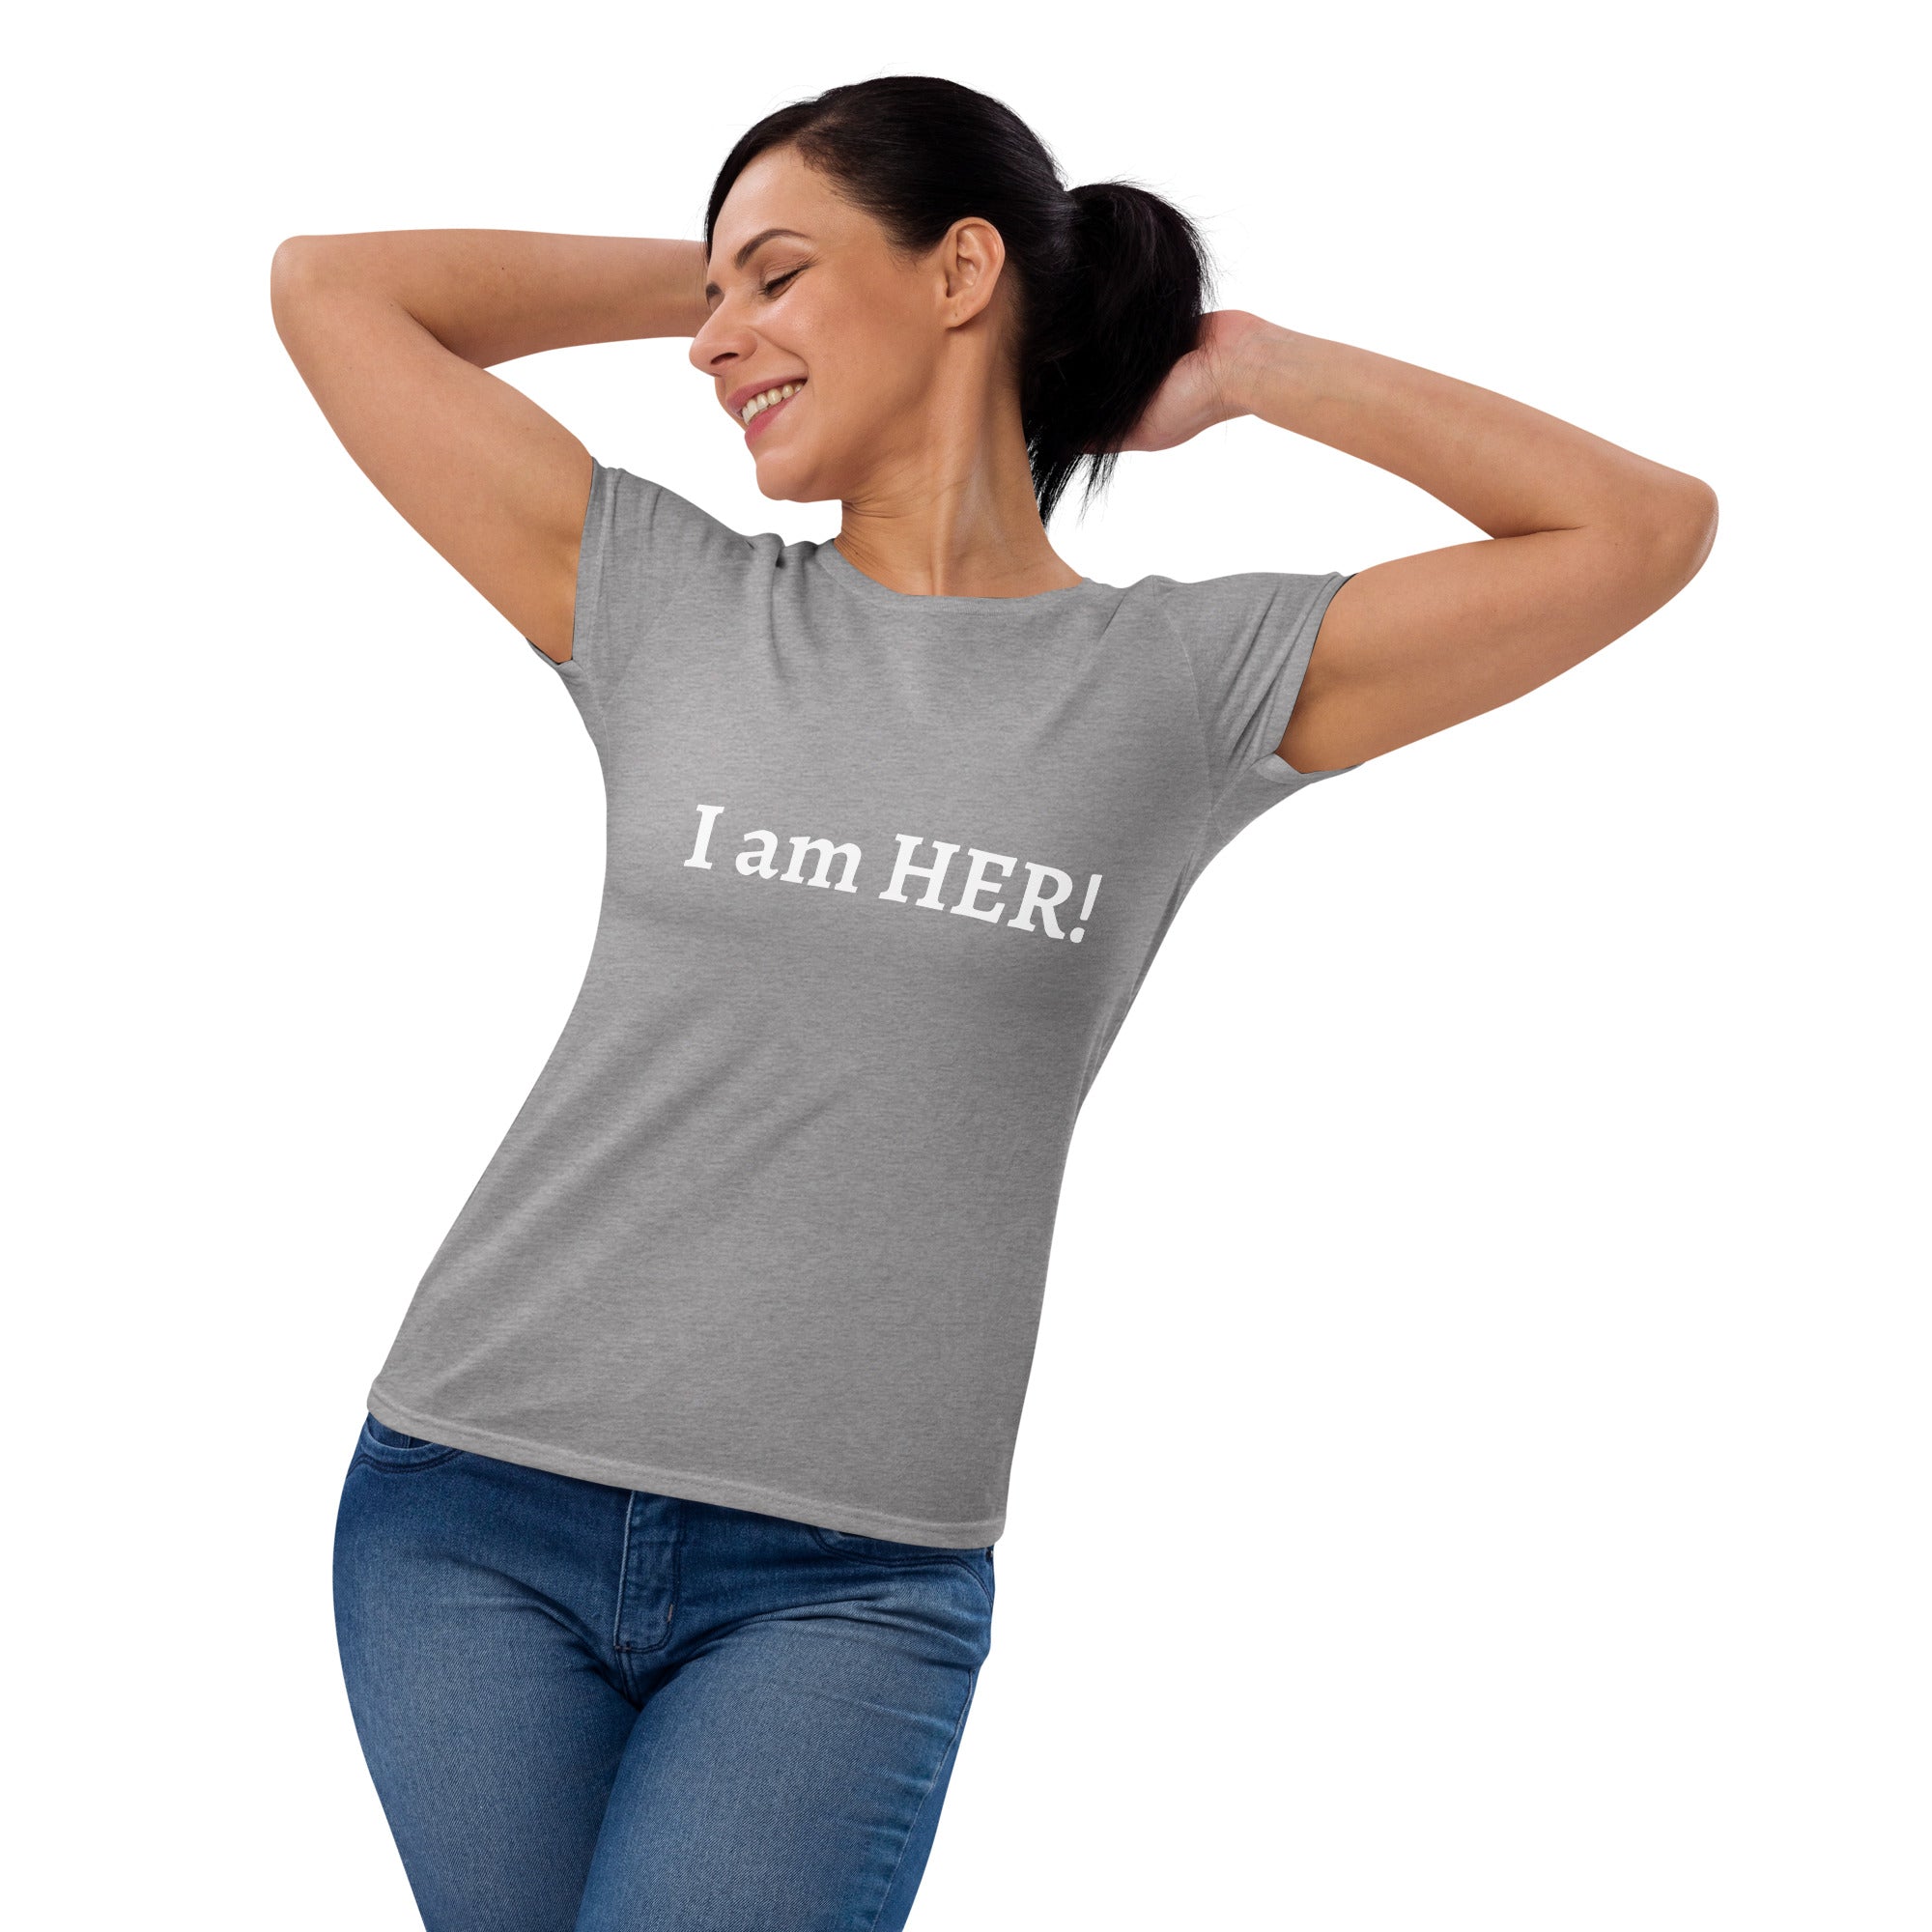 I am HER T-shirt